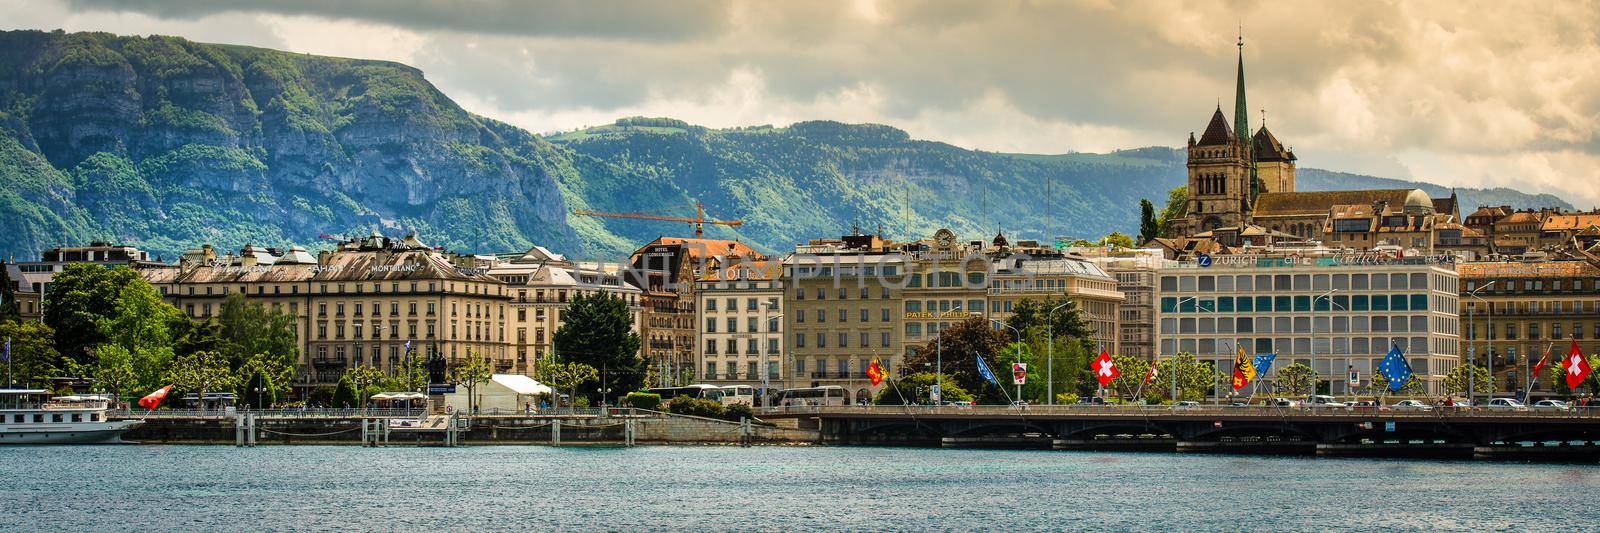 view of Geneva by GekaSkr